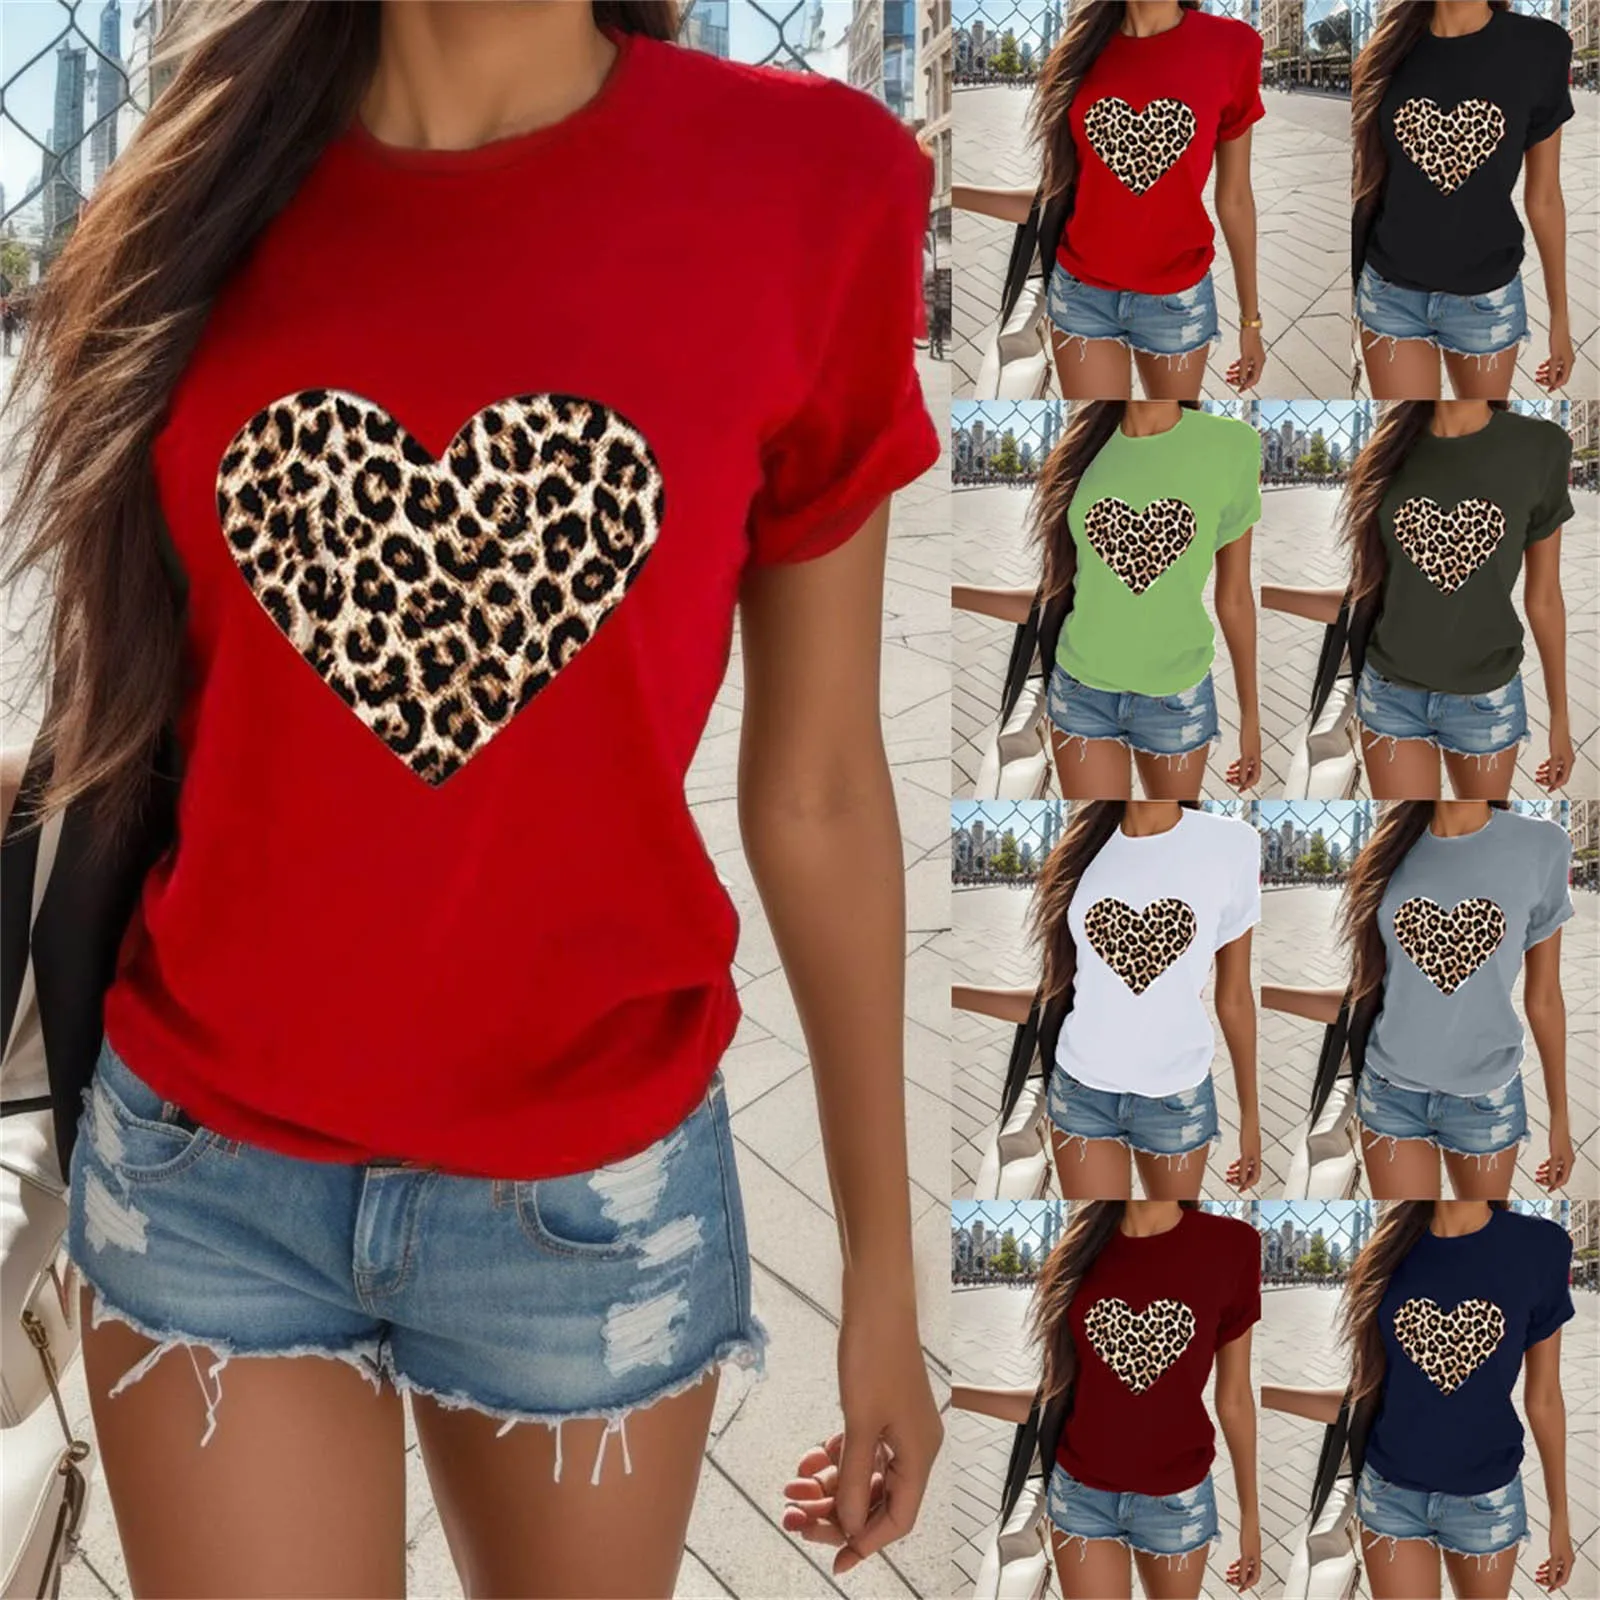 

Женская футболка, топы для влюбленных, футболки на День святого Валентина, футболка для пары, летняя спортивная Праздничная футболка с коротким рукавом